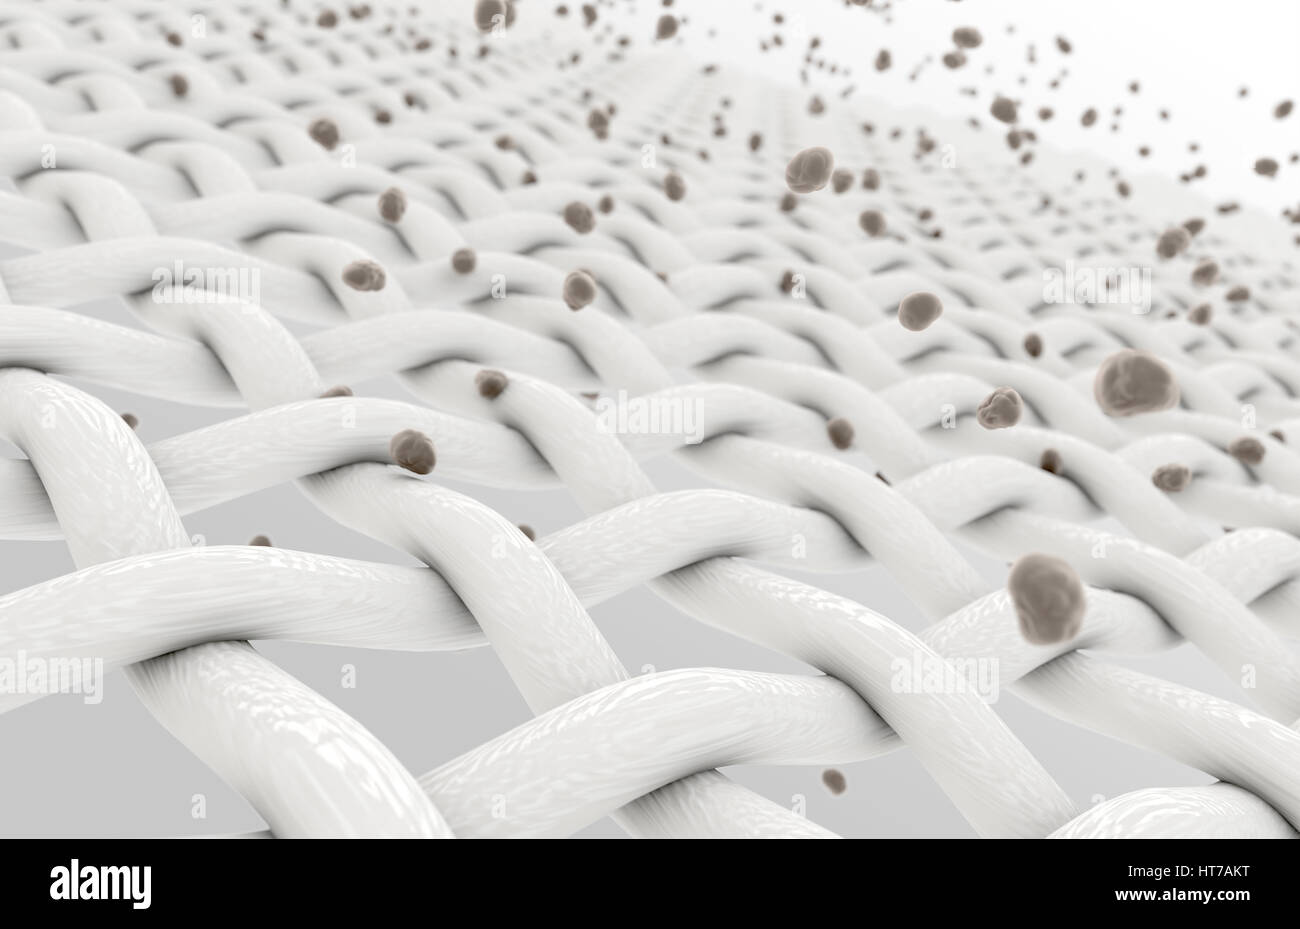 Eine extreme Vergrößerung der weißen, die einzelne Gewebe Fäden, die eingedrungen durch Schmutzpartikel auf einem isolierten Hintergrund - 3D render Stockfoto